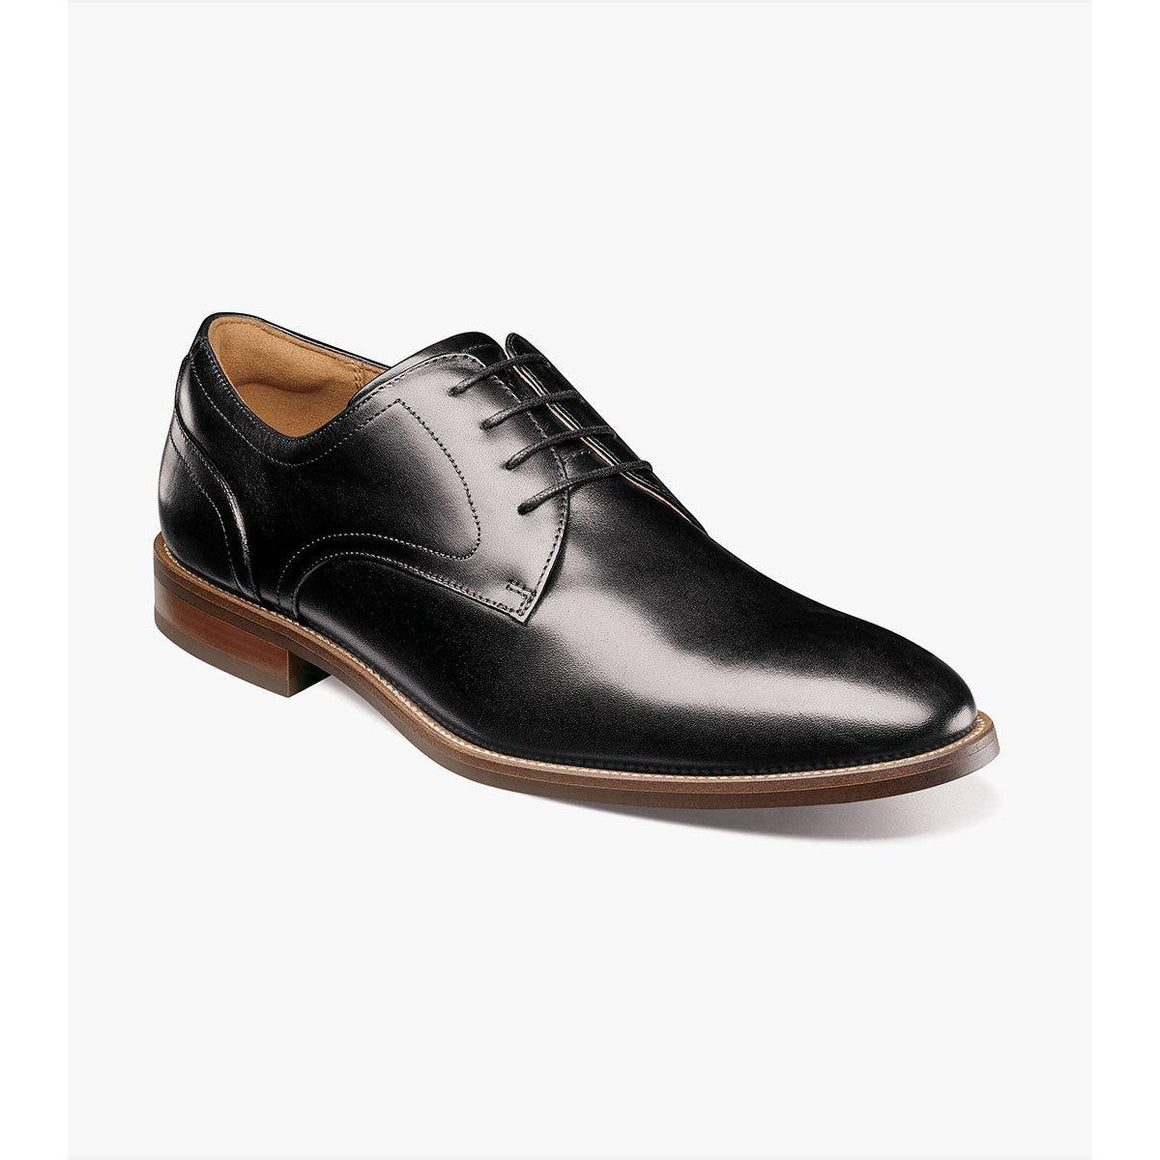 RUCCI PLAIN TOE OXFORD-MENS DRESS FOOTWEAR-FLORSHEIM-JB Evans Fashions & Footwear